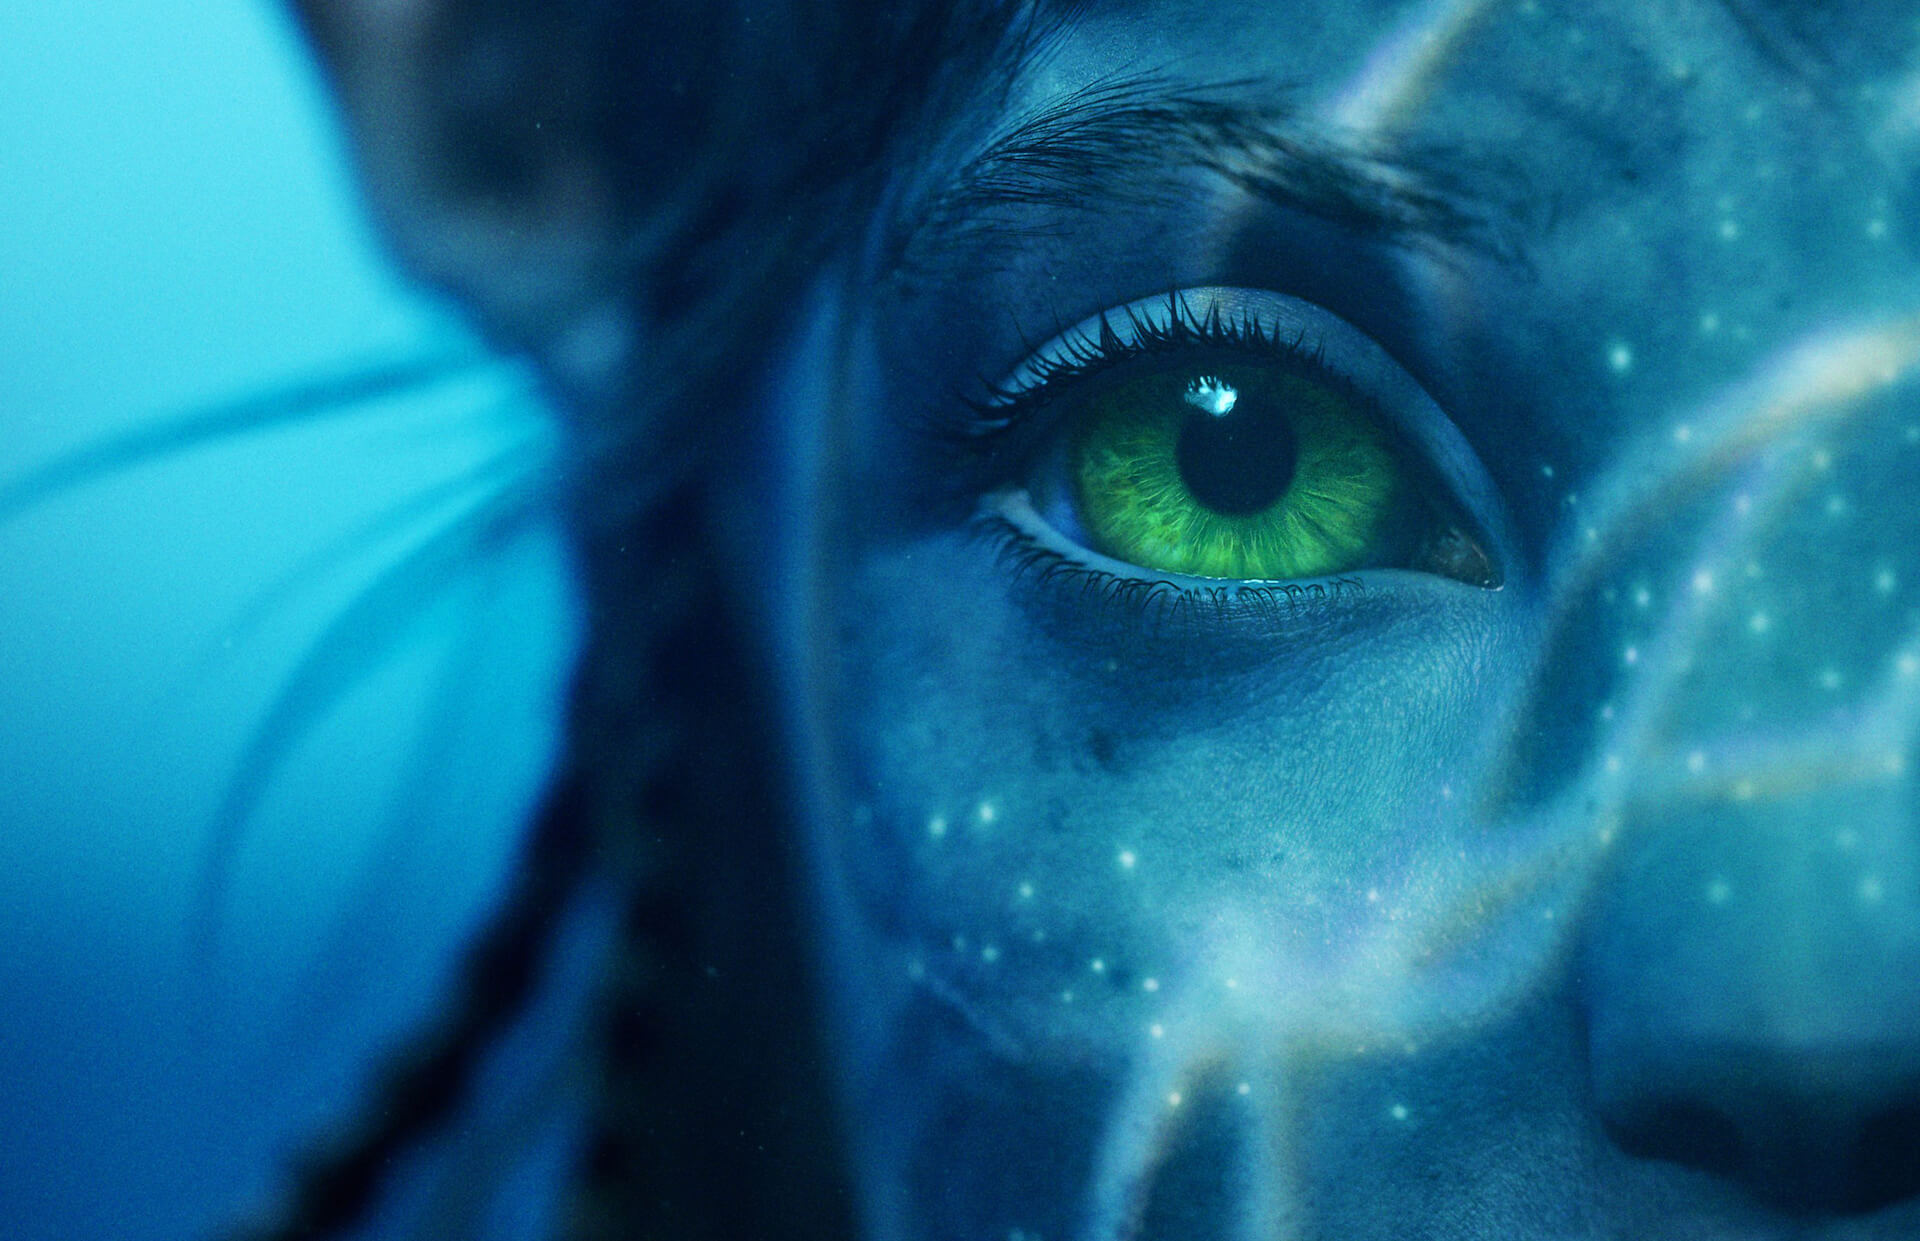 Felfedték Kate Winslet karakterét az Avatar: A víz útja legújabb fényképén